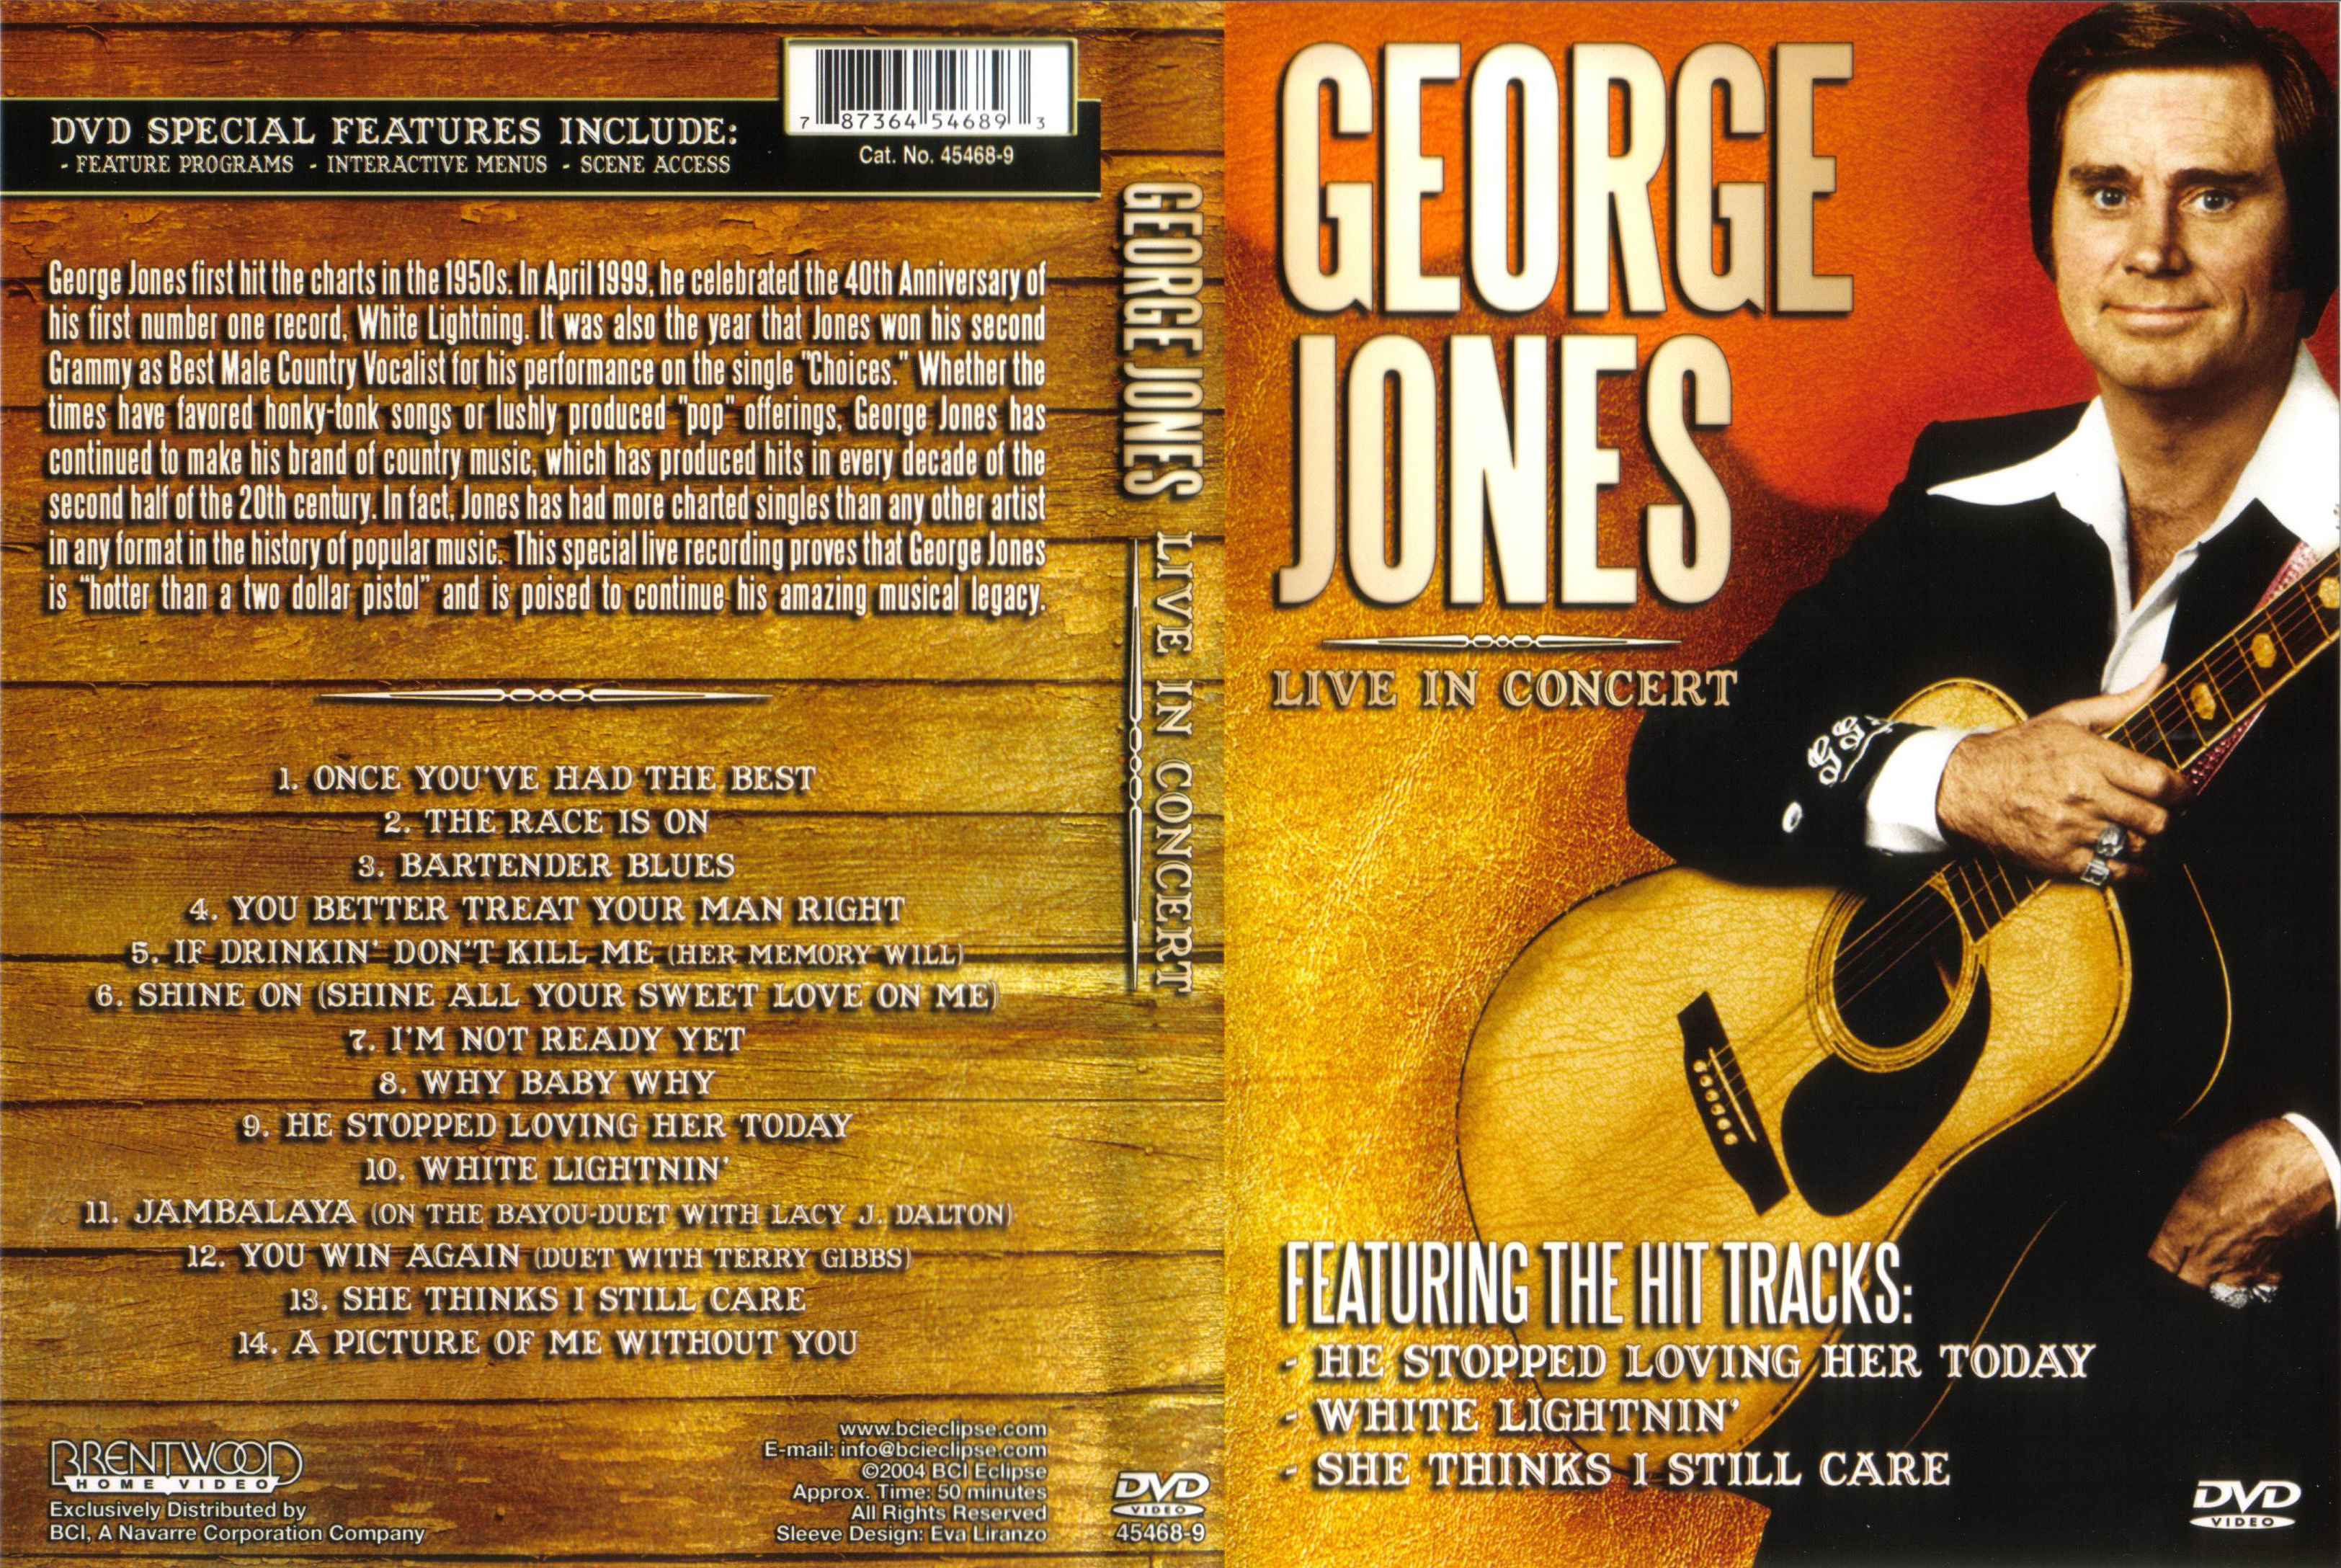 Jaquette DVD George Jones live in concert